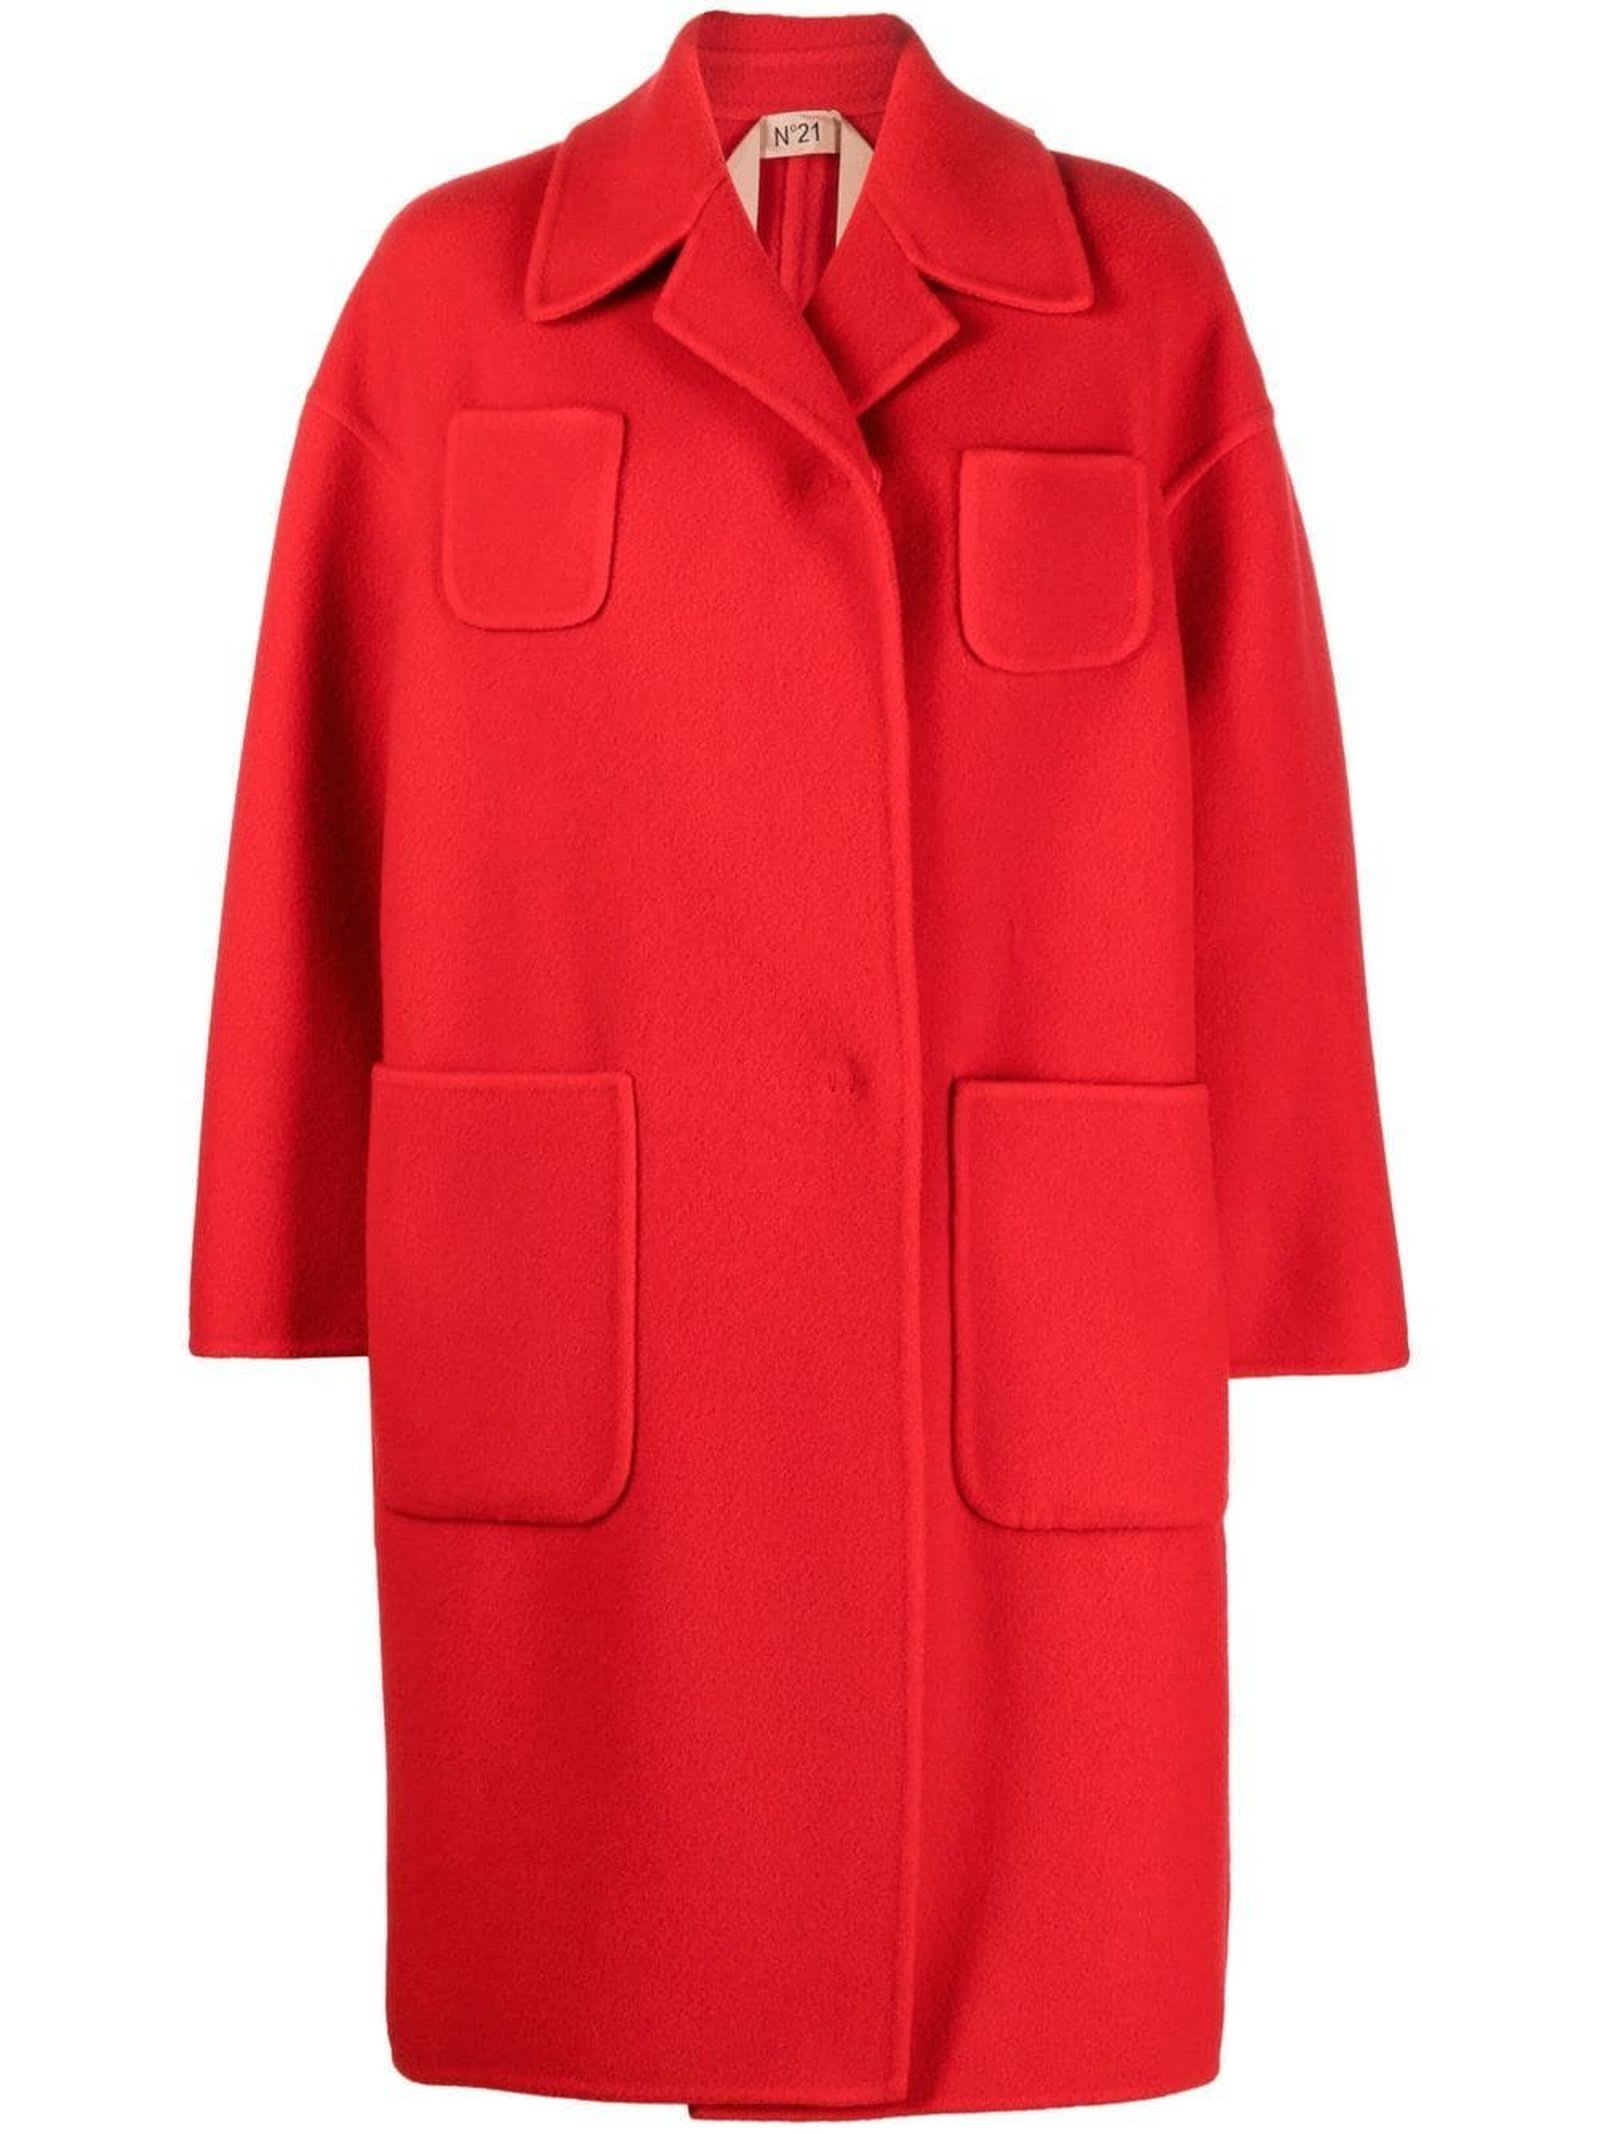 N.21 Bright Red Wool Blend Coat